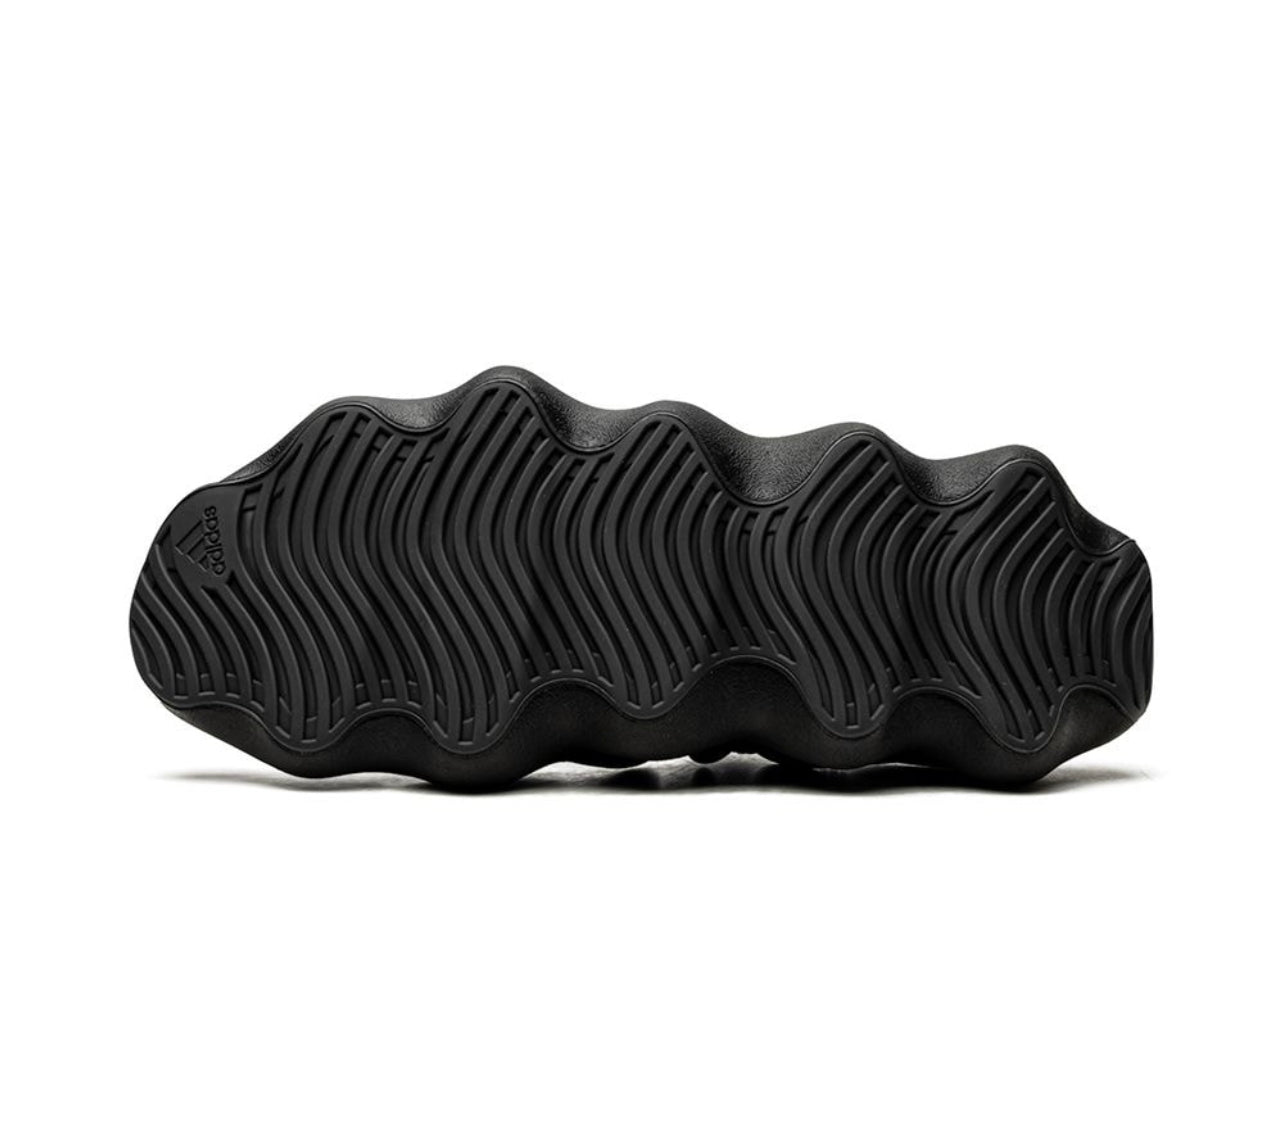 Adidas Yeezy YEEZY 450 "Dark Slate" sneakers